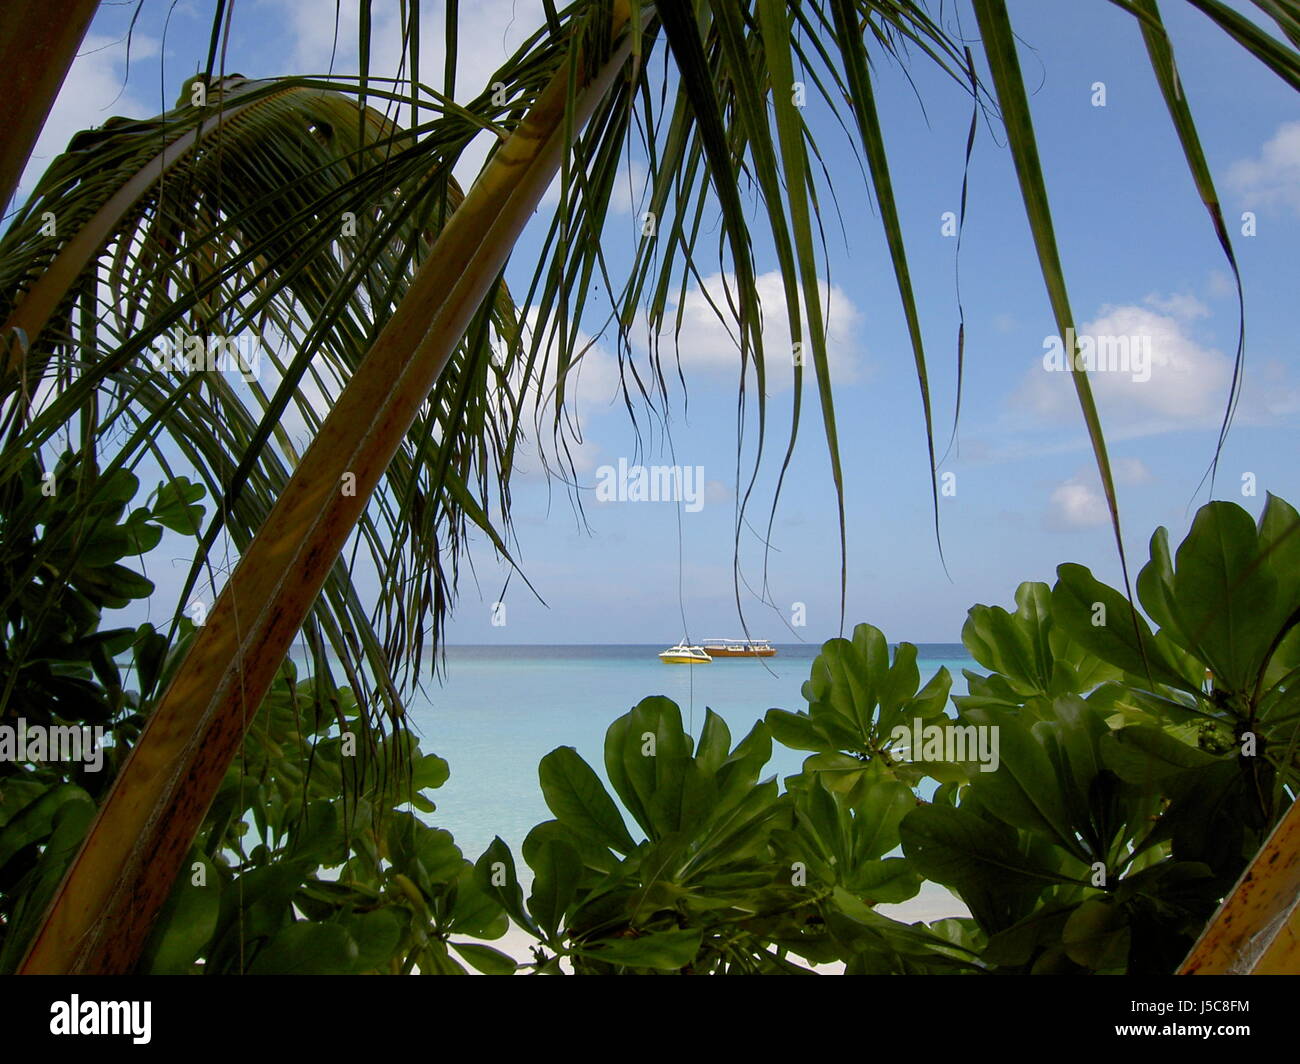 Viaggio vacanza vacanze vacanze vacanze alle Maldive atollo palms idillio tropicale Foto Stock